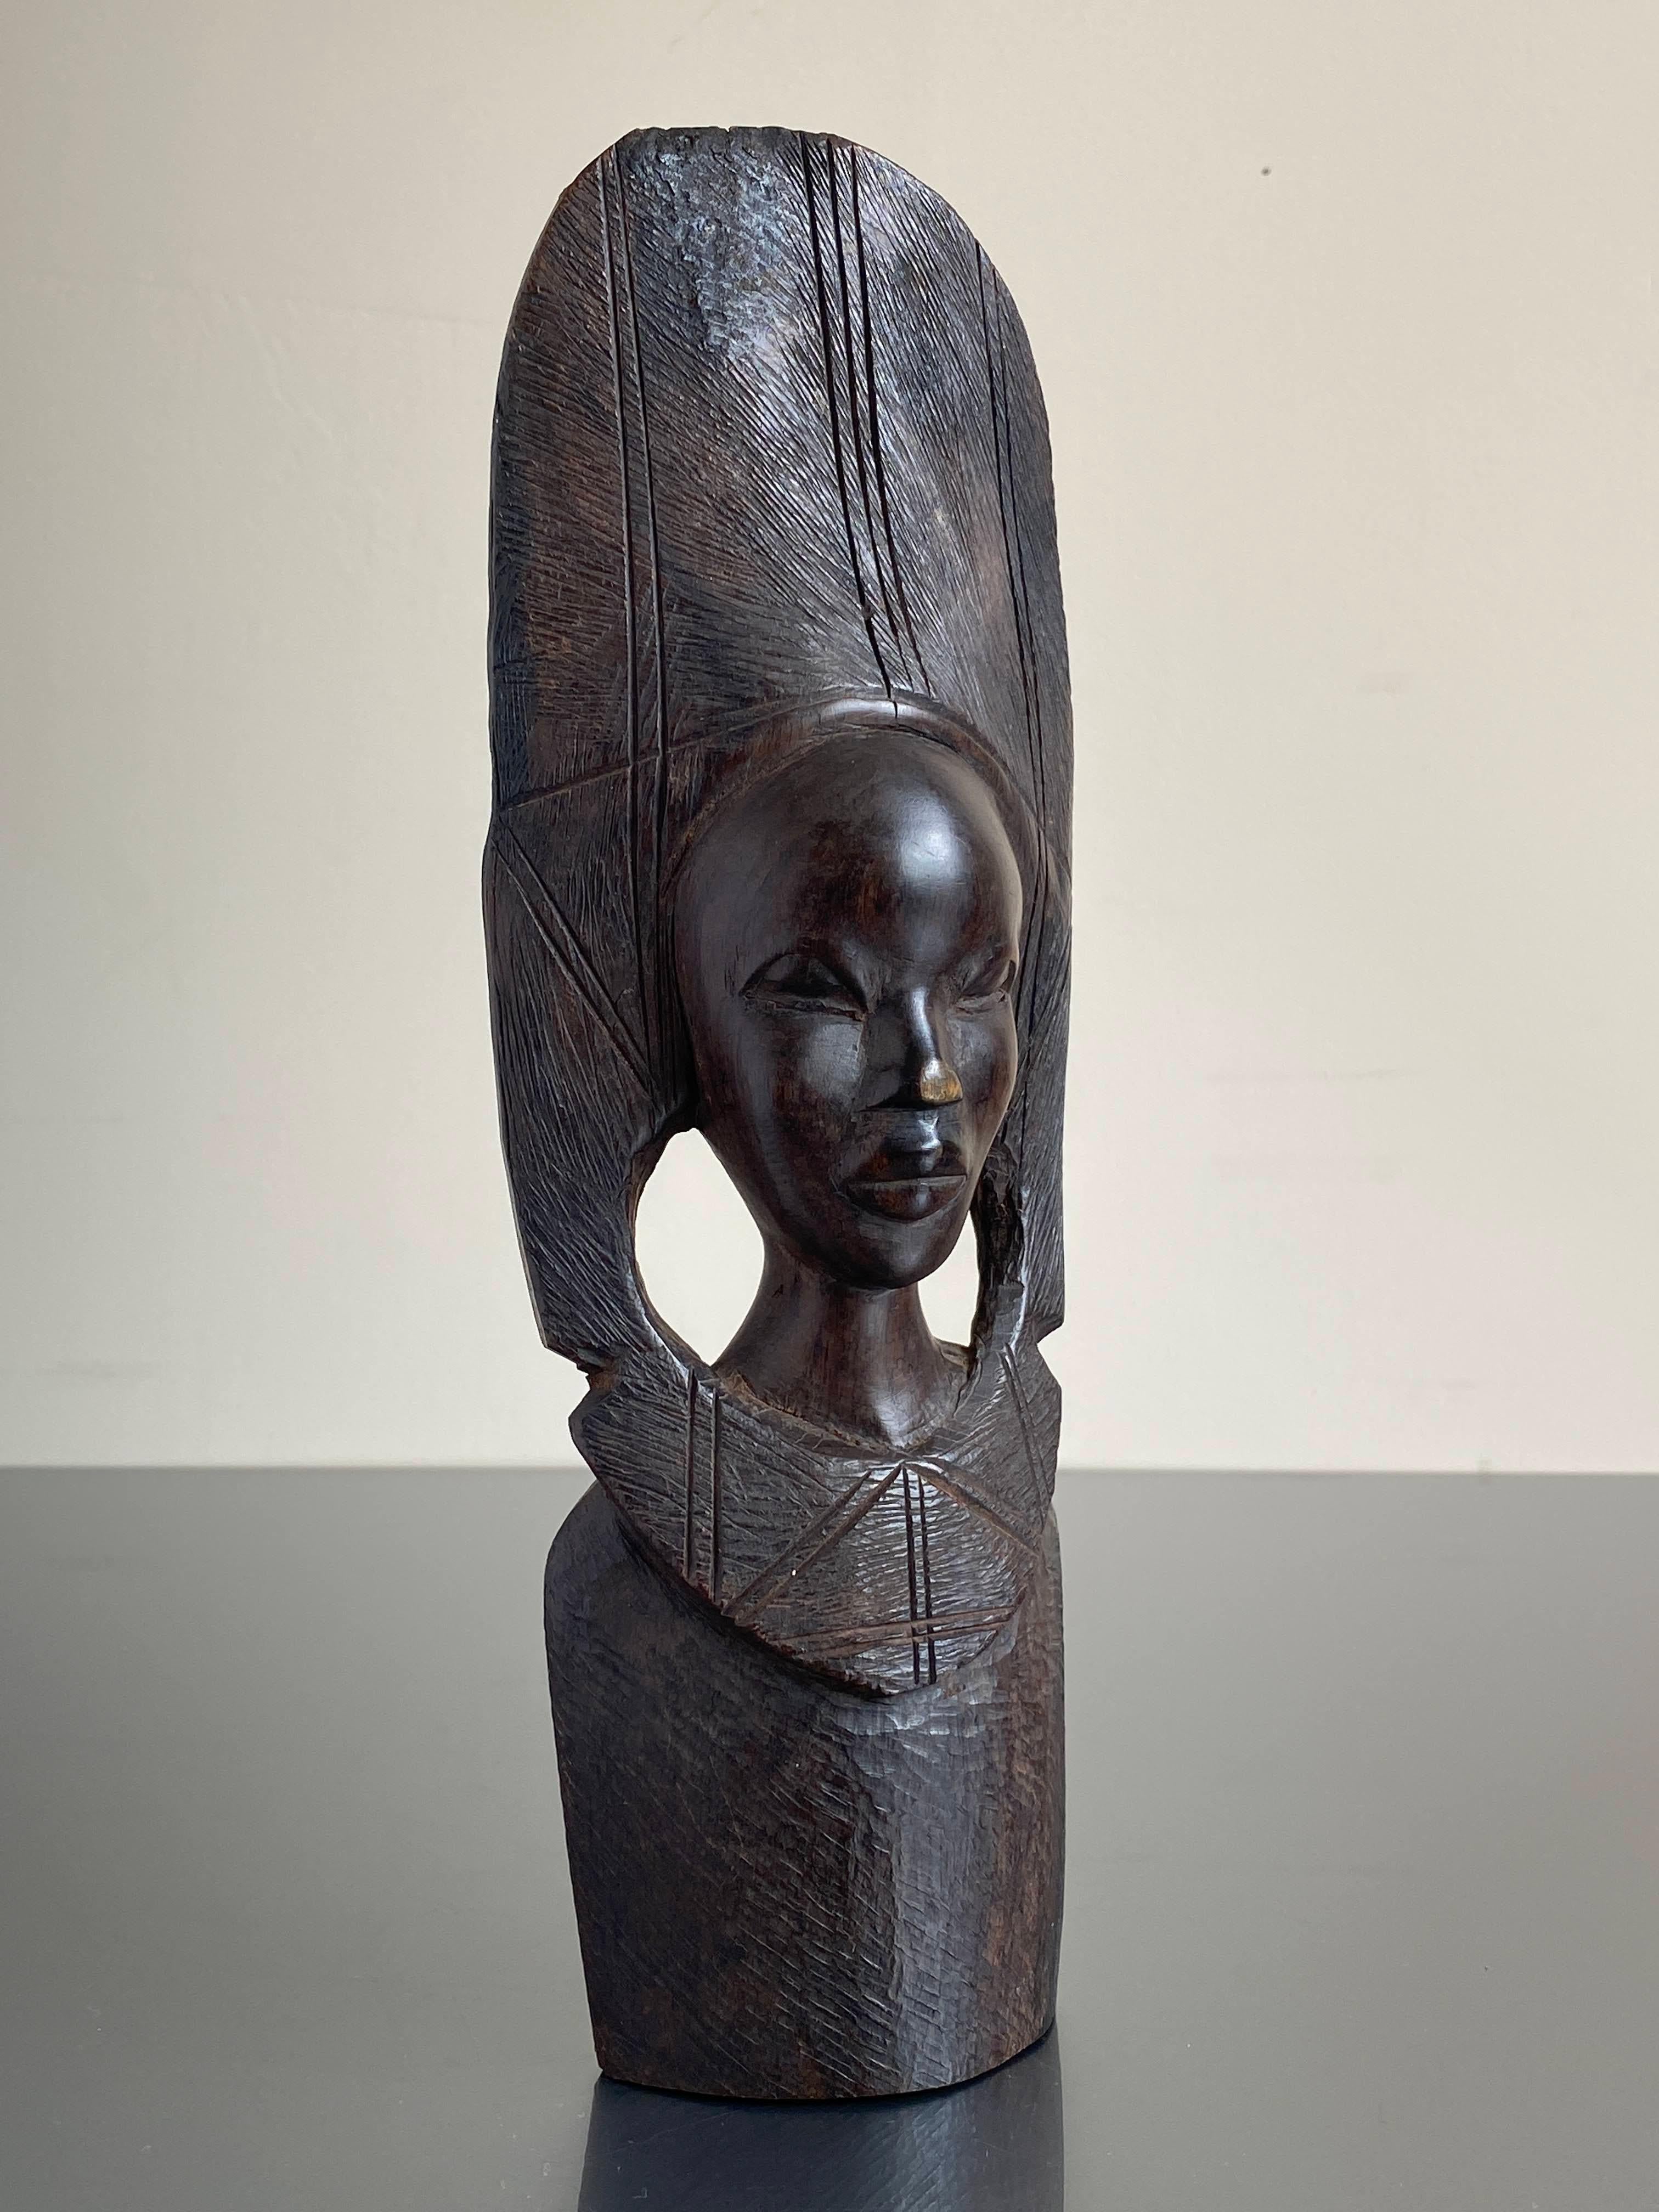 Magnifique sculpture folklorique rustique africaine d'une femme, en bois dur, le nez a été frotté plusieurs fois pour porter chance !